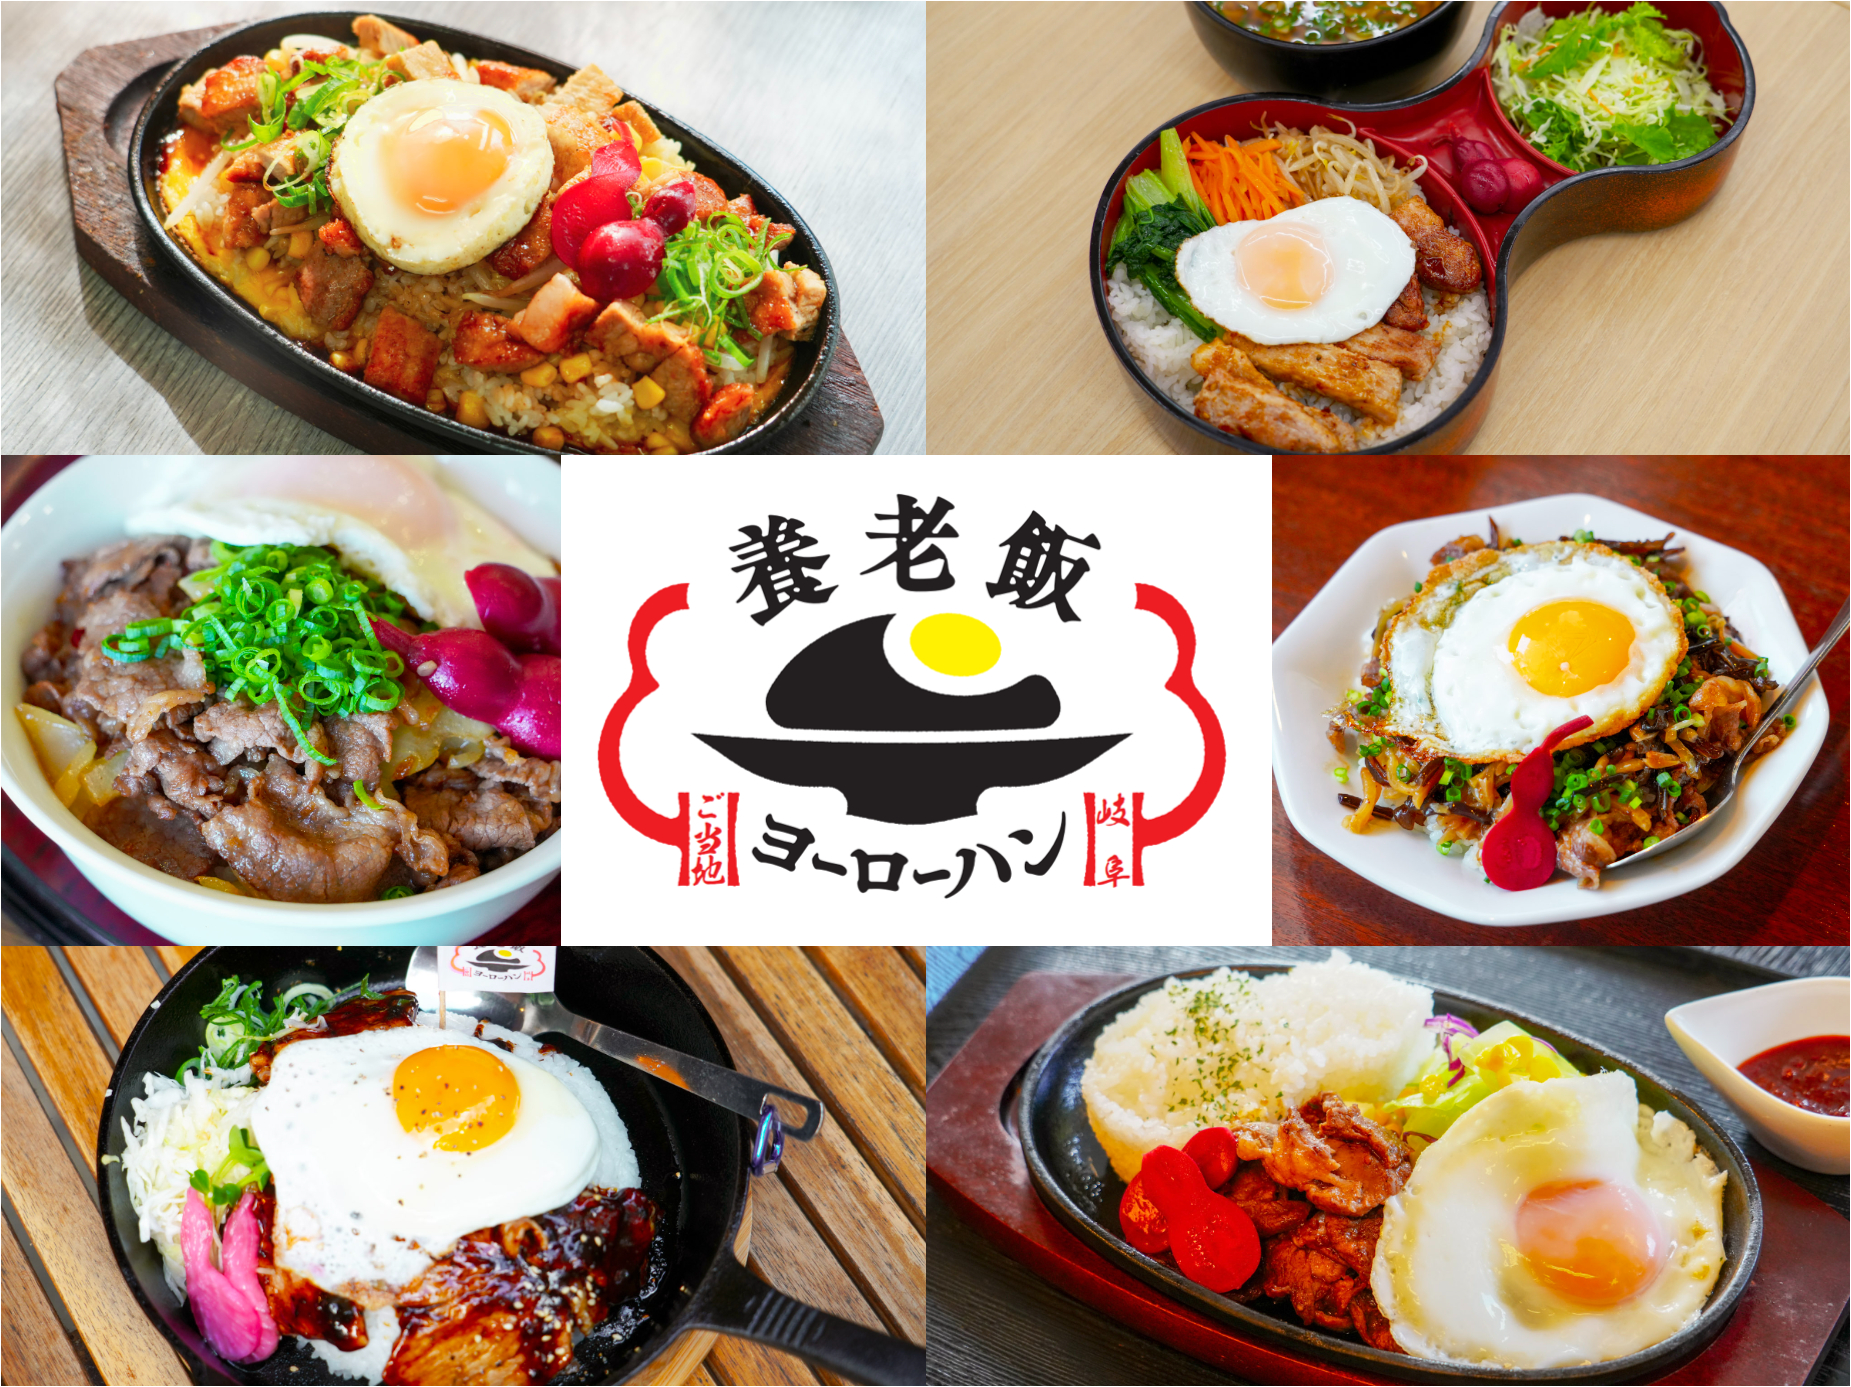 기후현 요로쵸의 일품 로컬 음식!「요로밥」을 먹을 수 있는 집【6선】